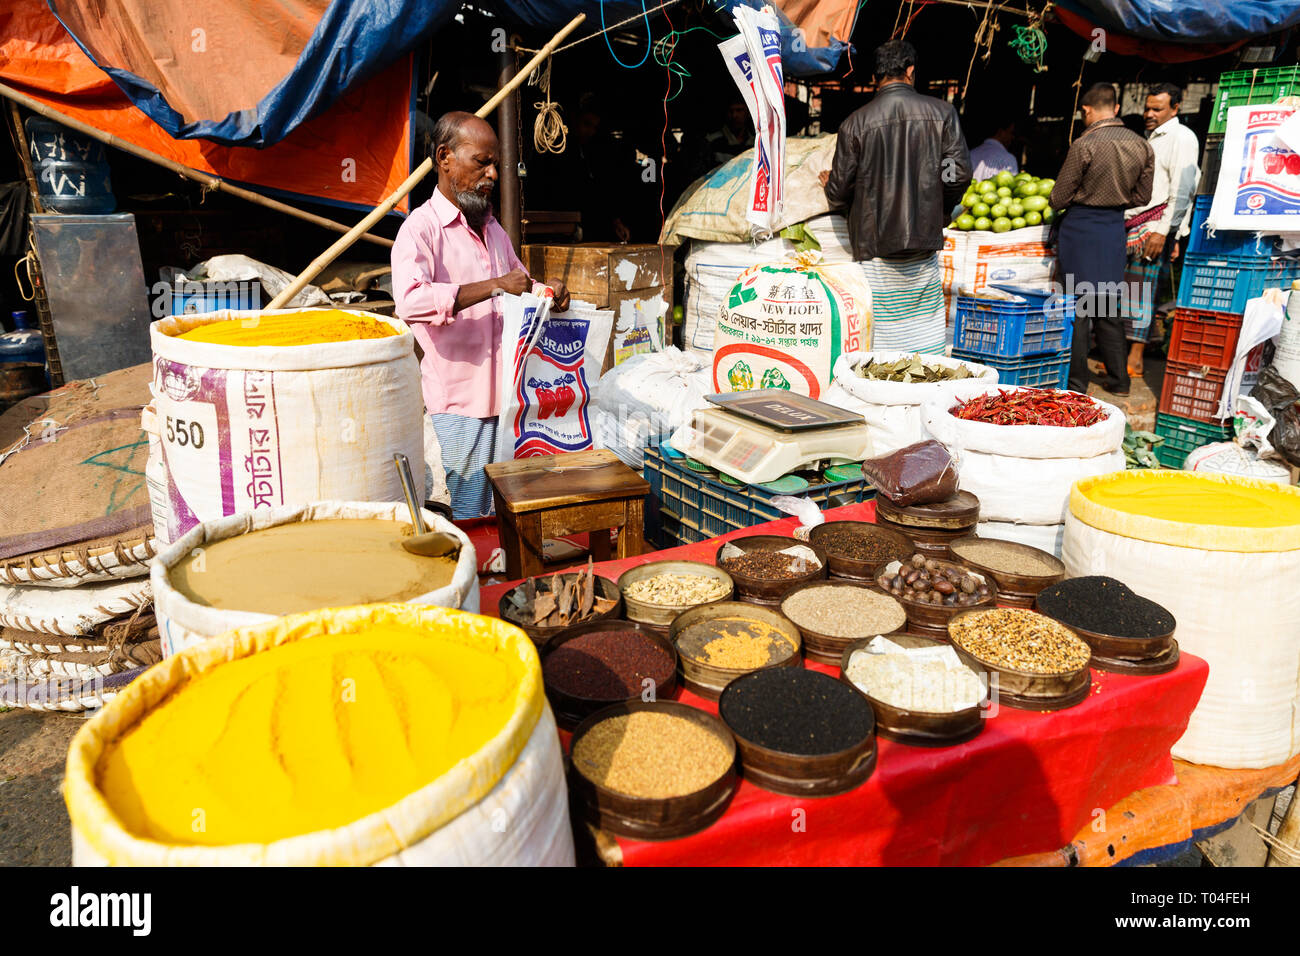 Colorido Mercado de frutas y especias con proveedores comerciales y personas que transportan mercancías en las calles de Dhaka, Bangladesh Foto de stock